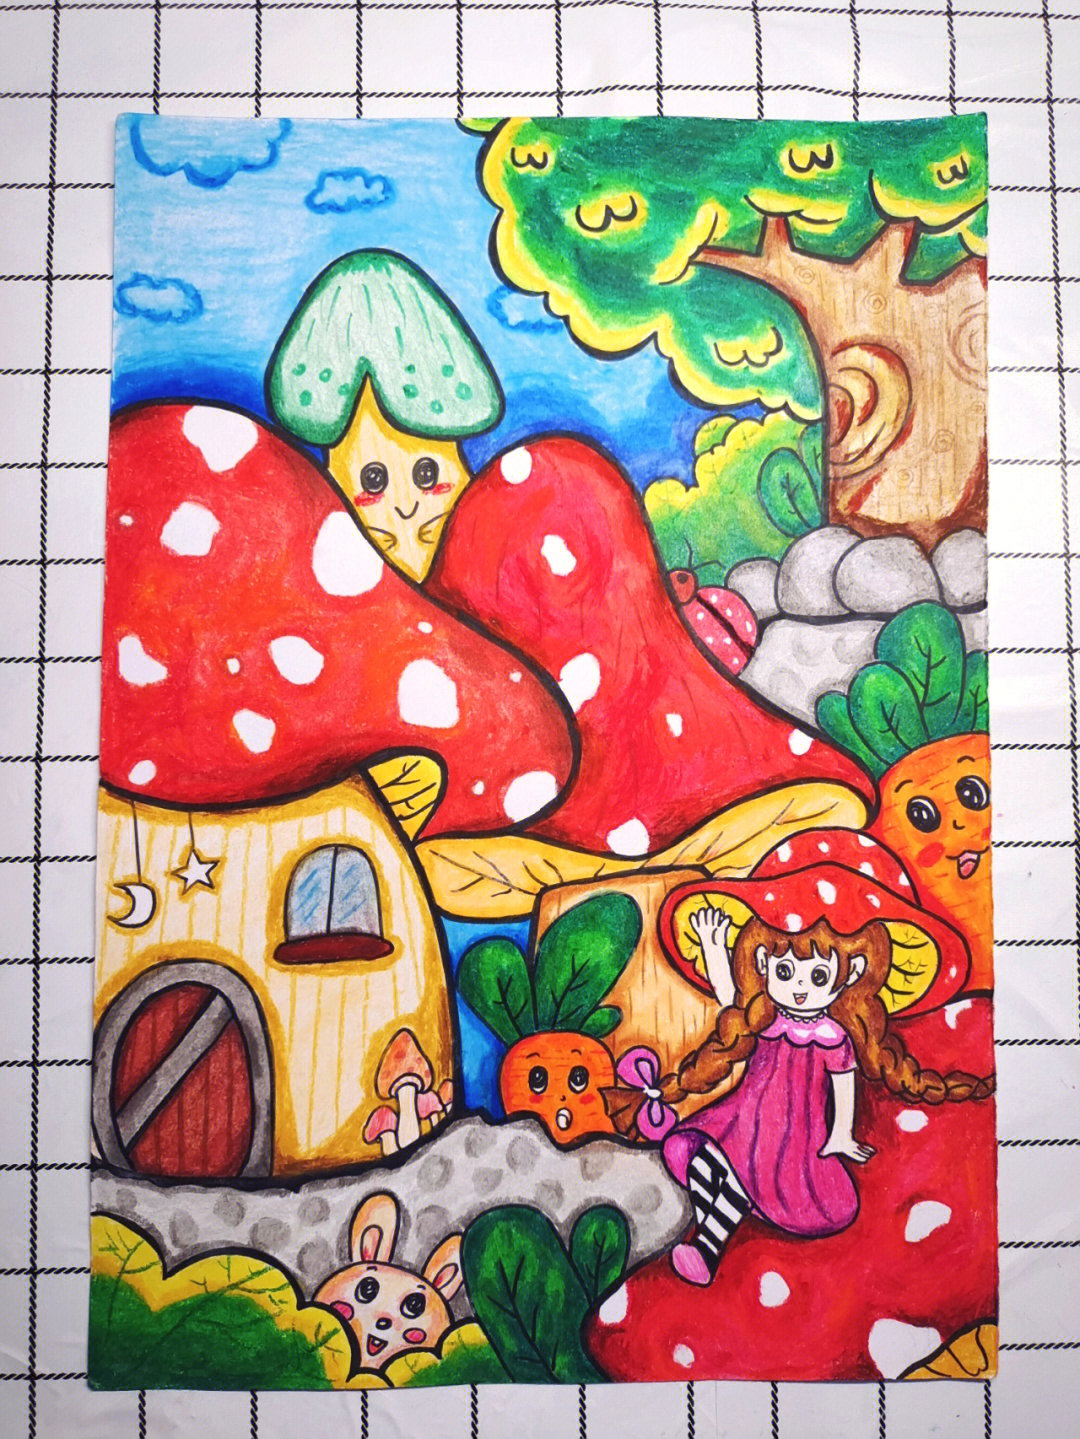 蘑菇简笔画彩色图片